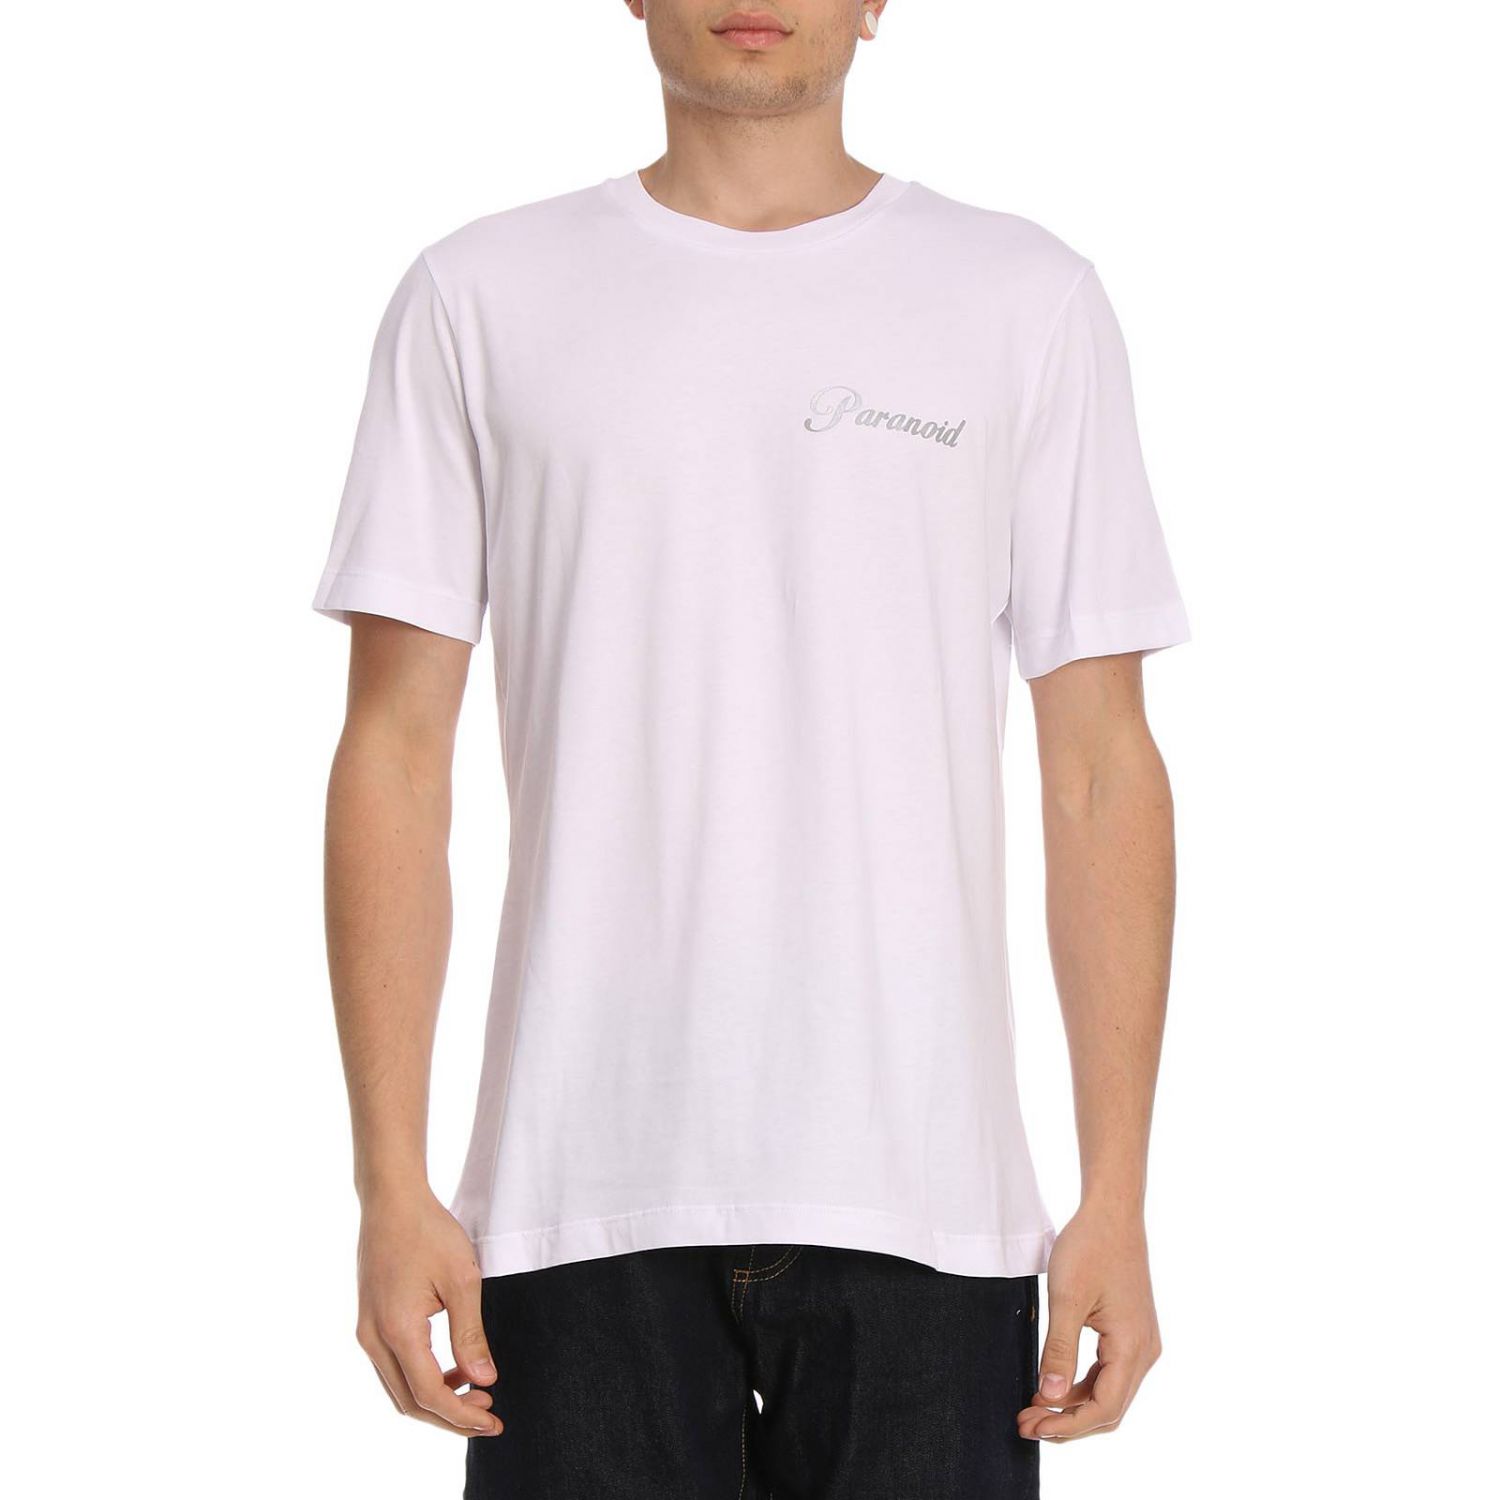 Omc Outlet: T-shirt men | T-Shirt Omc Men White | T-Shirt Omc PARA ...